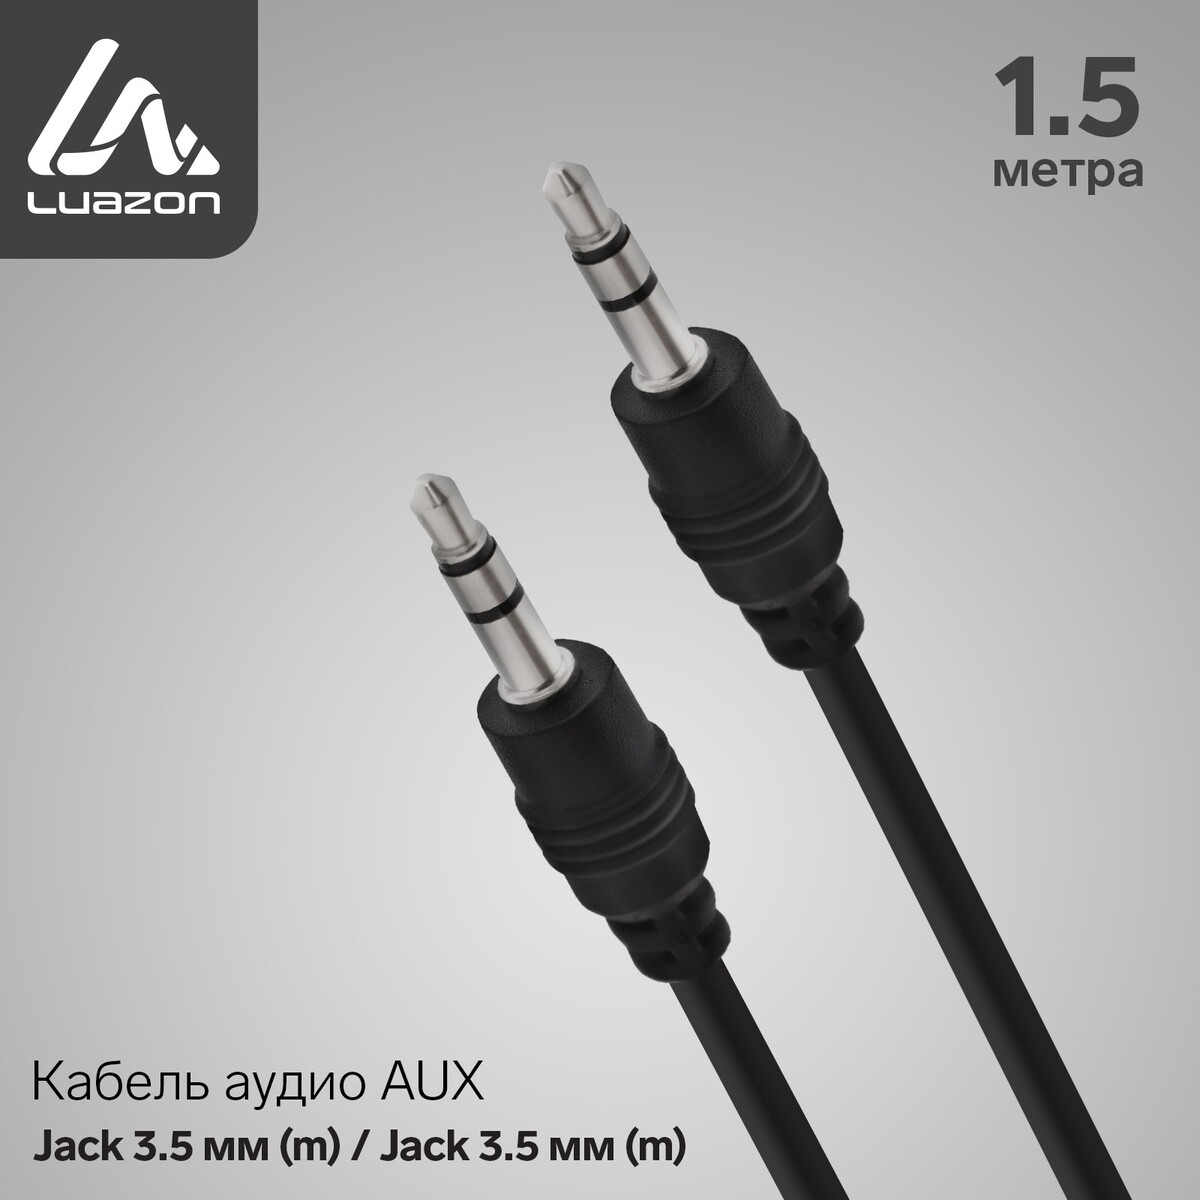 Кабель аудио aux luazon, jack 3.5 мм (m)-jack 3.5 мм (m), 1.5 м, черный кабель y cable 500мм разъем jr